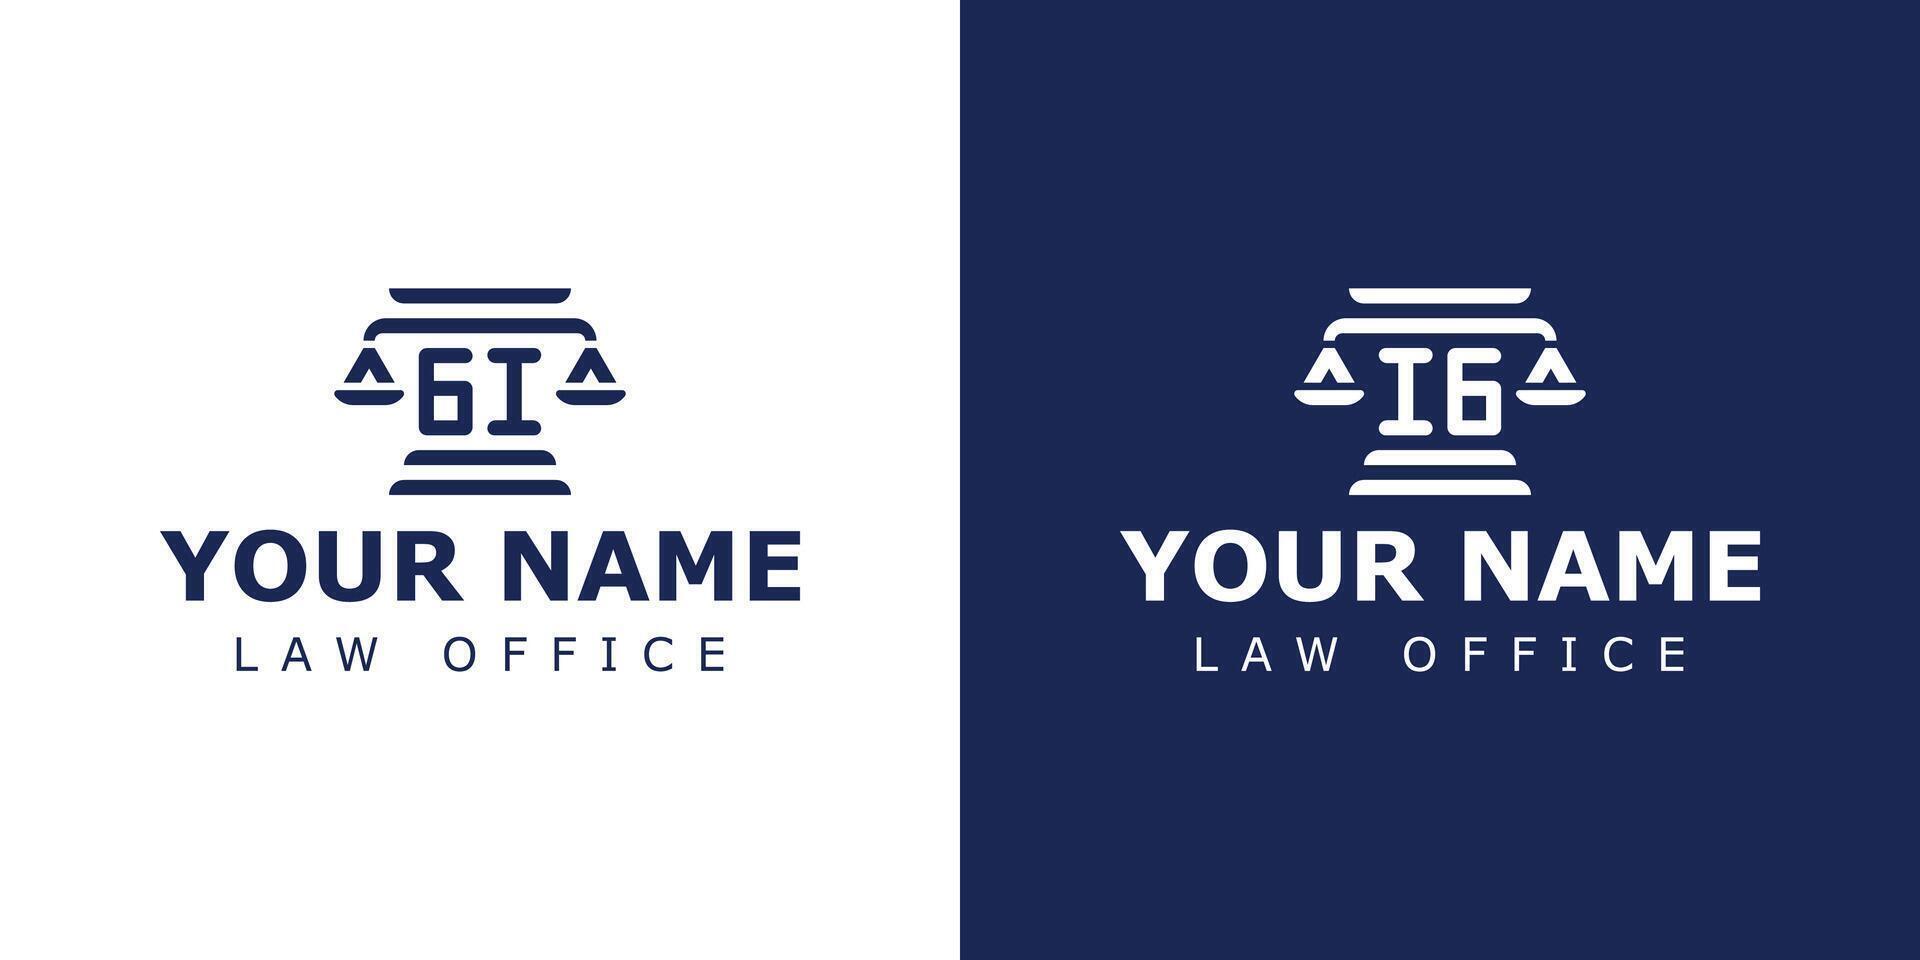 Briefe gi und ich G legal Logo, geeignet zum Rechtsanwalt, legal, oder Gerechtigkeit mit gi oder ich G Initialen vektor